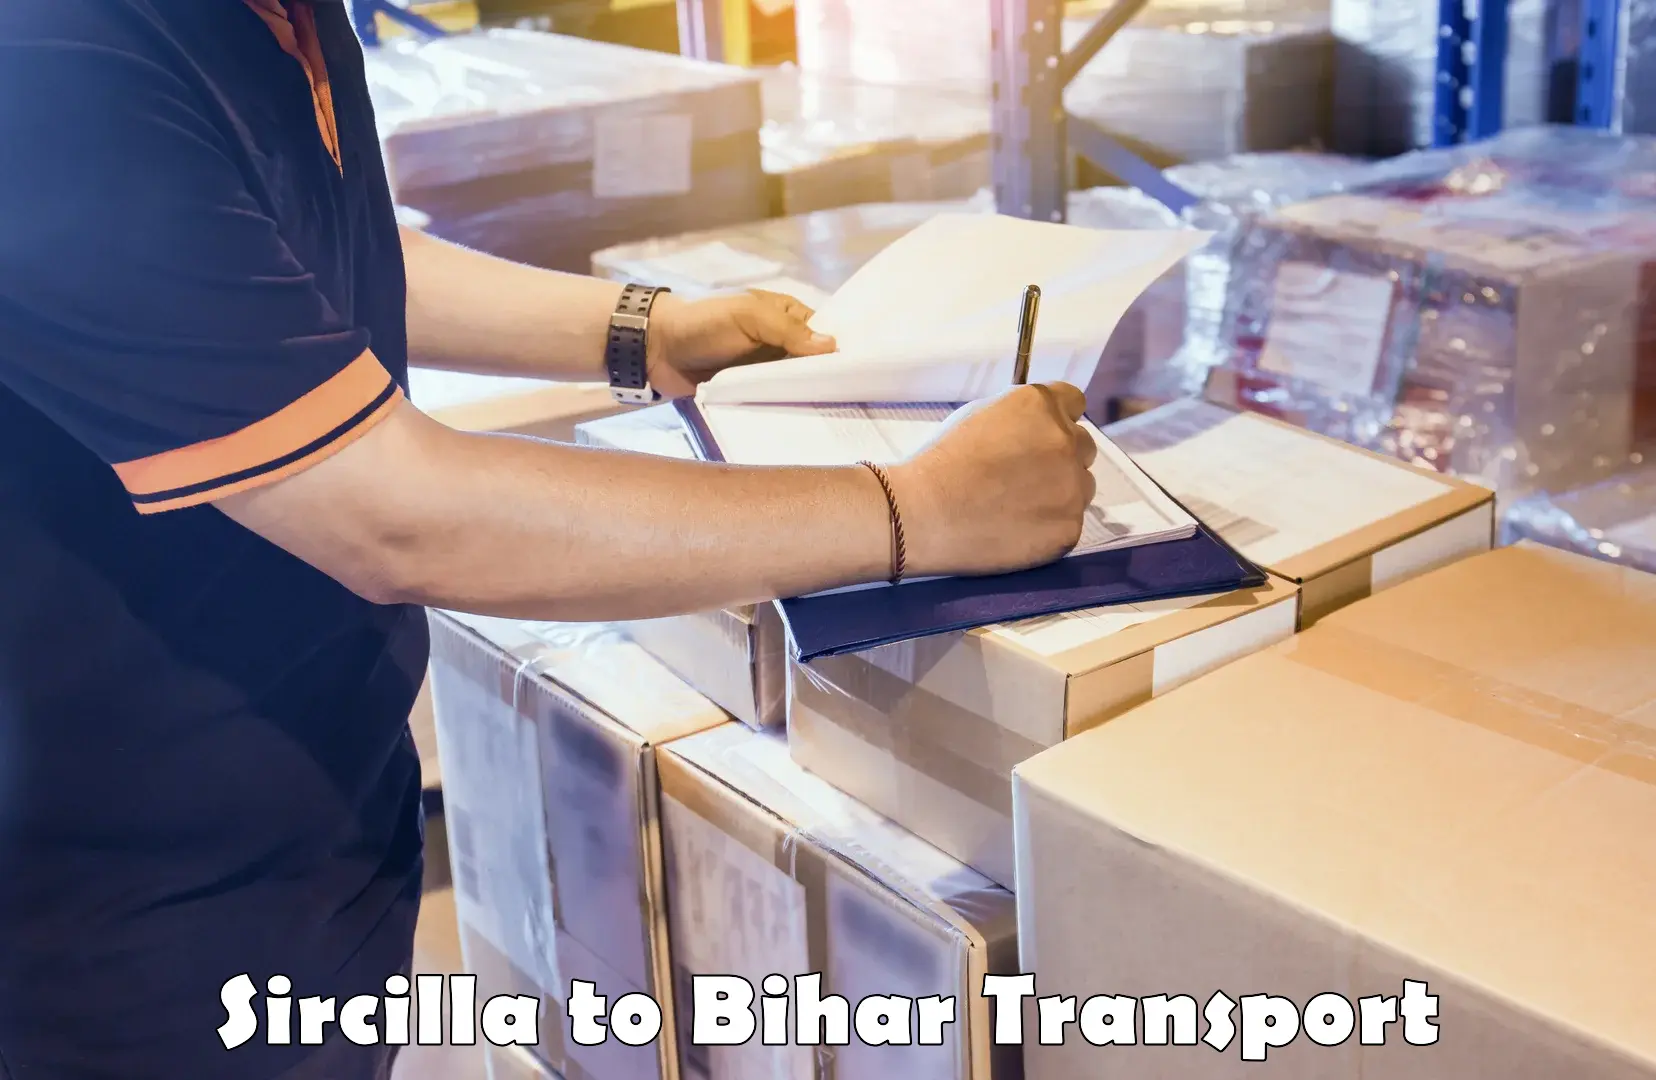 Cargo train transport services Sircilla to Mairwa